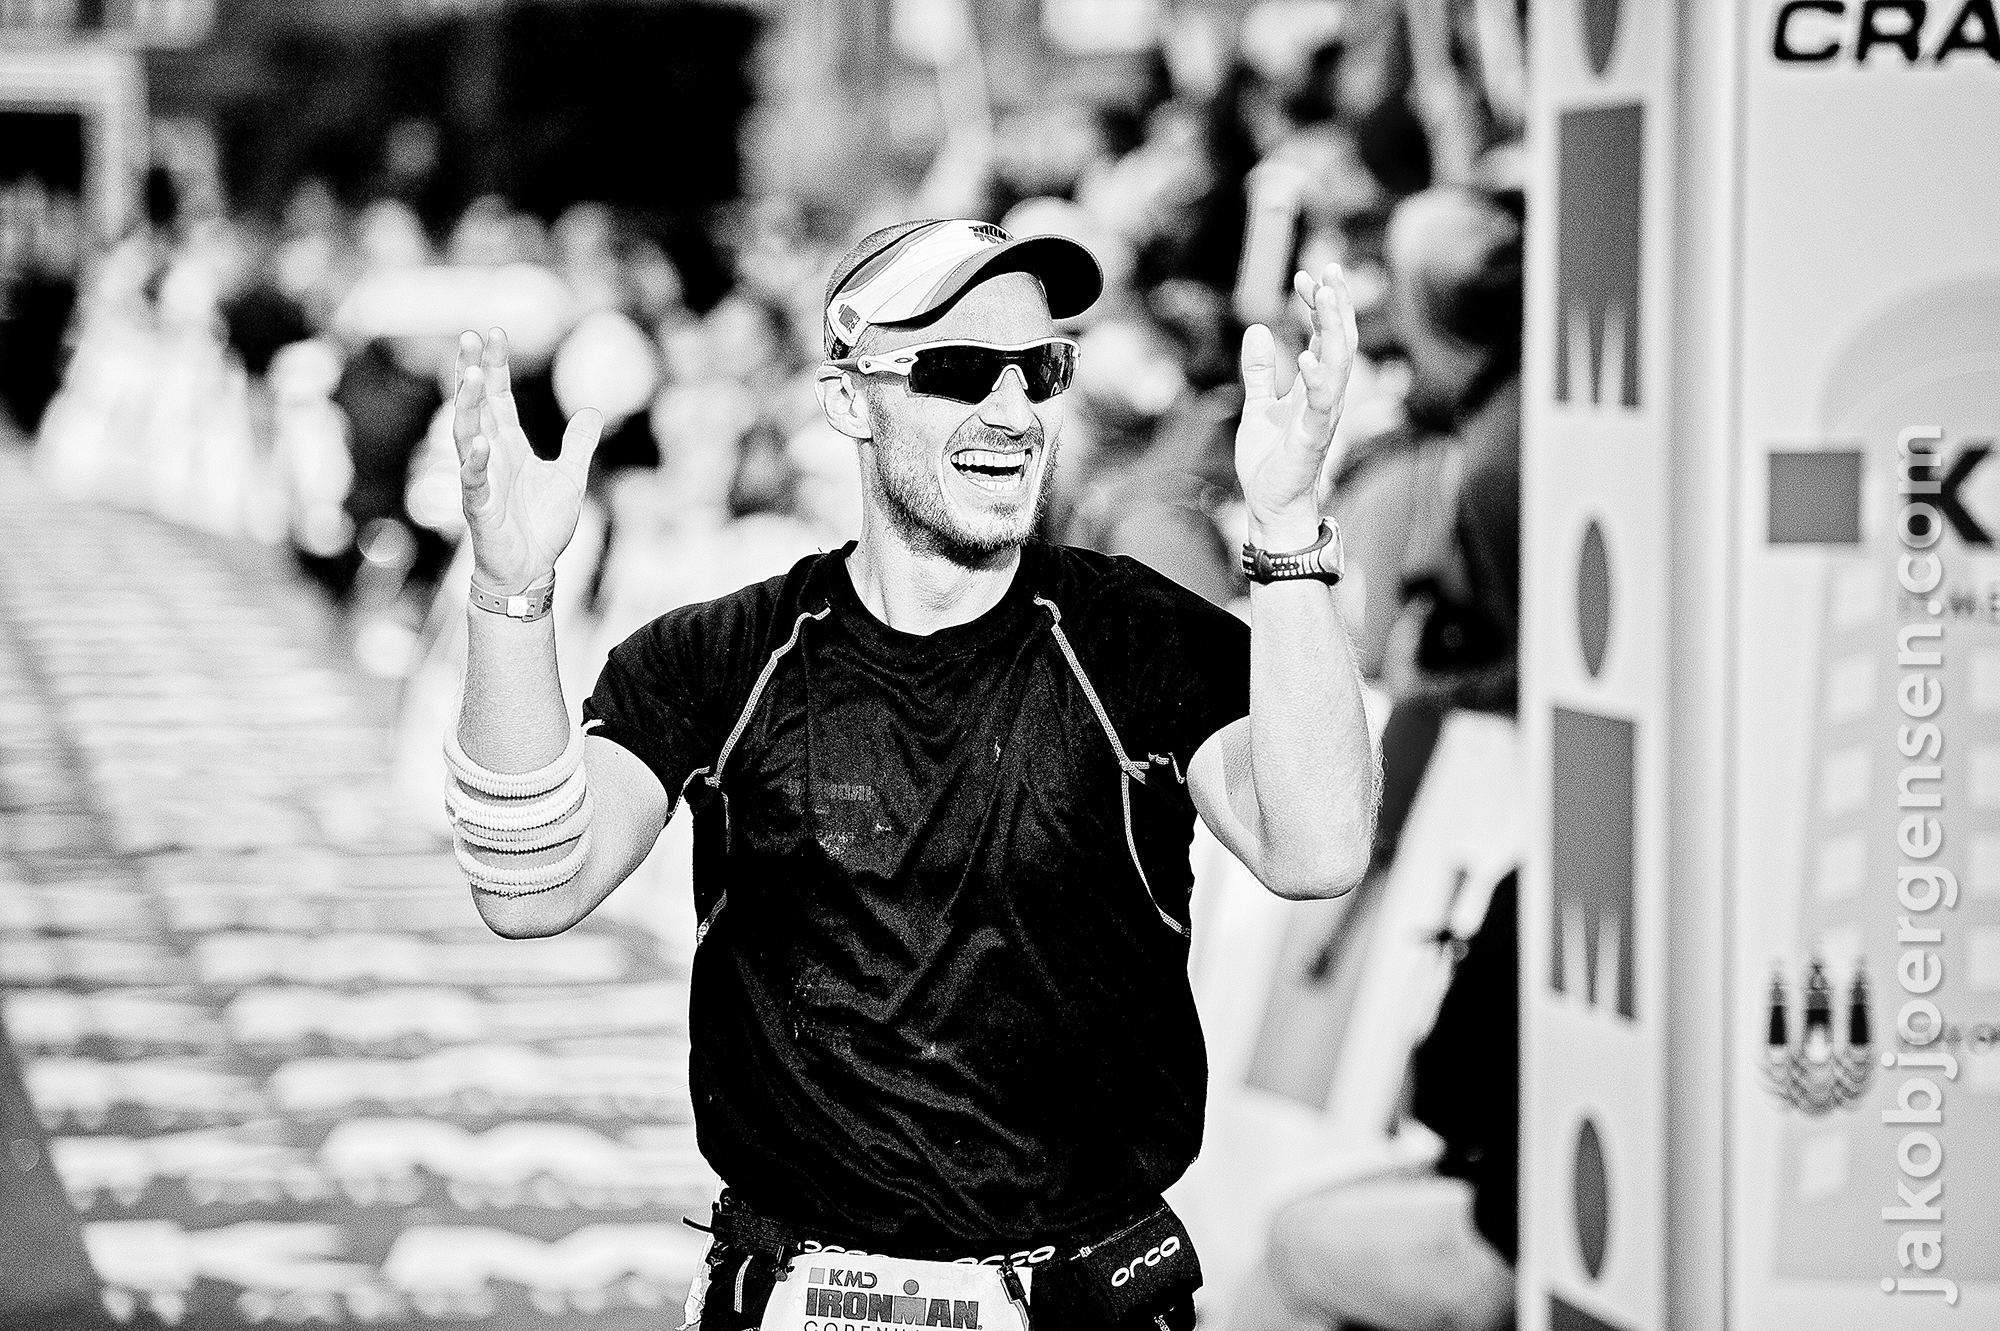 24-08-14_KMD Ironman Copenhagen 2014_0002.JPG